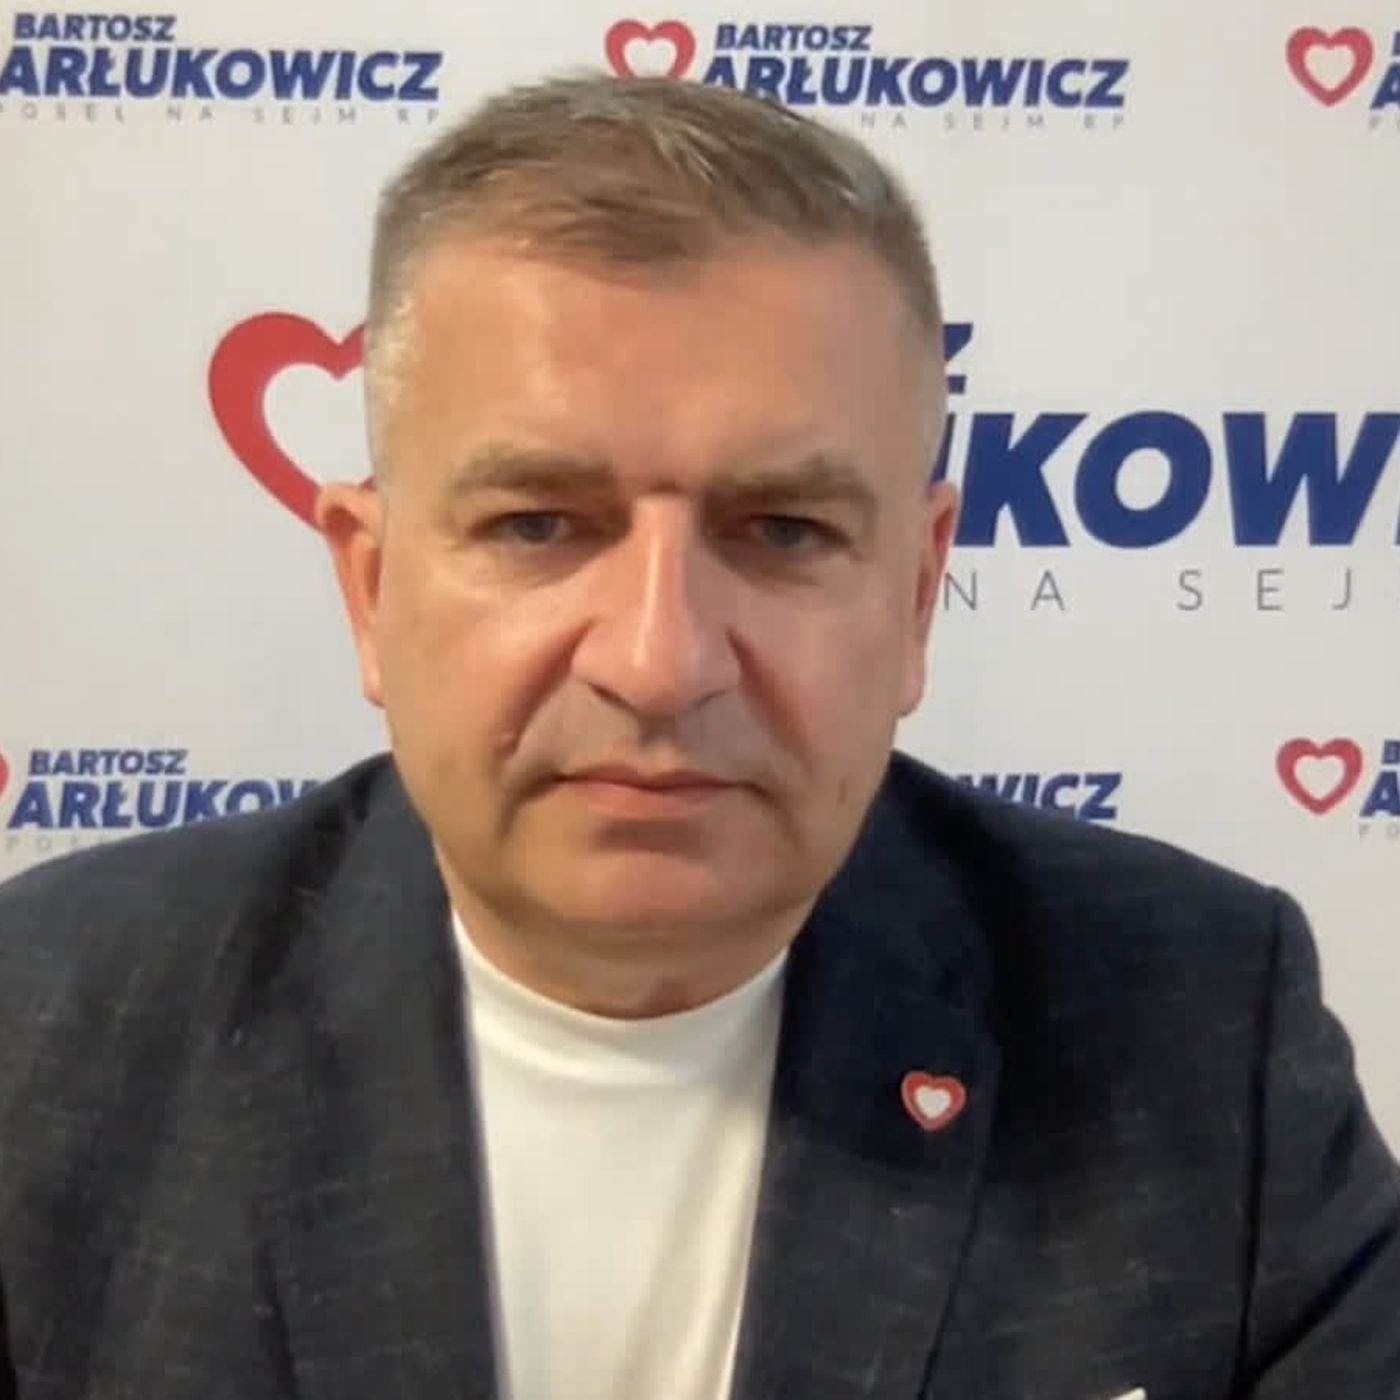 Bartosz Arłukowicz, poseł KO i kandydat do PE